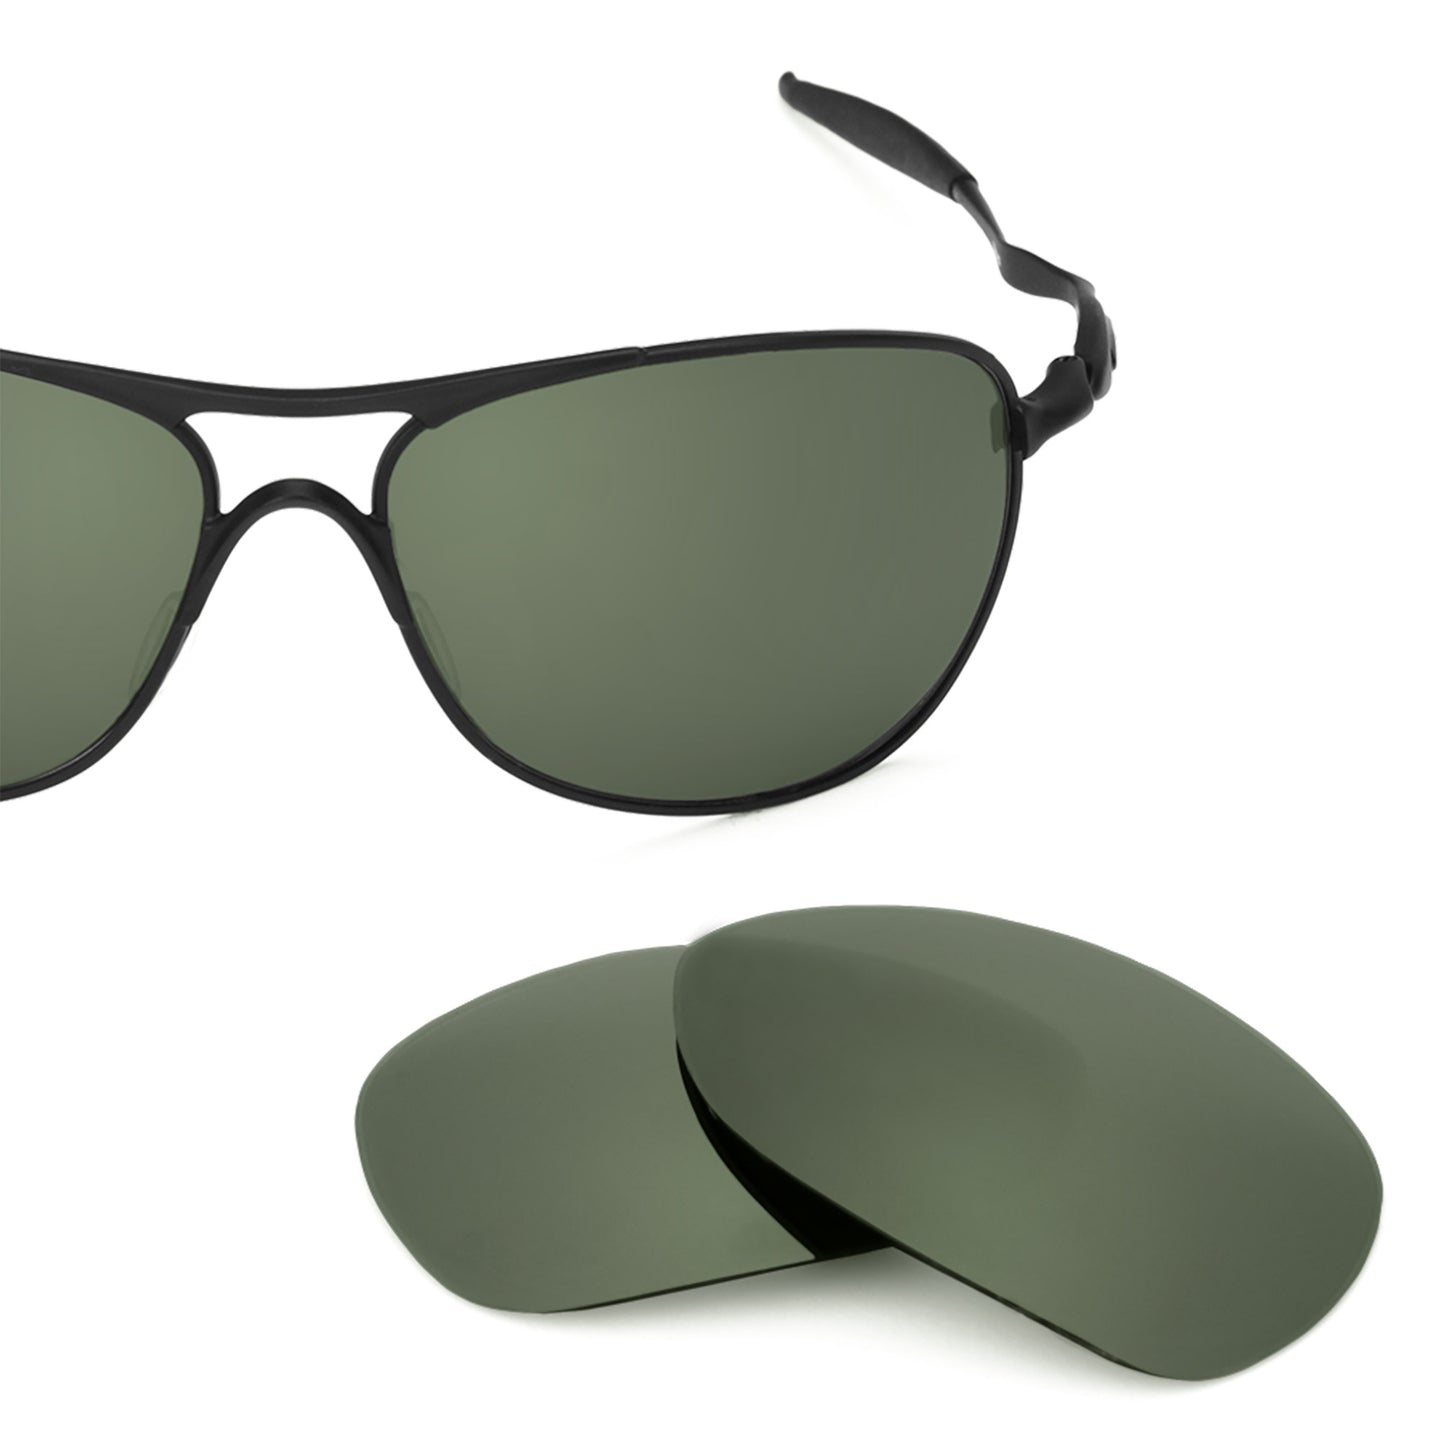 Revant replacement lenses for Oakley Crosshair (2012) Elite Polarized Gray Green